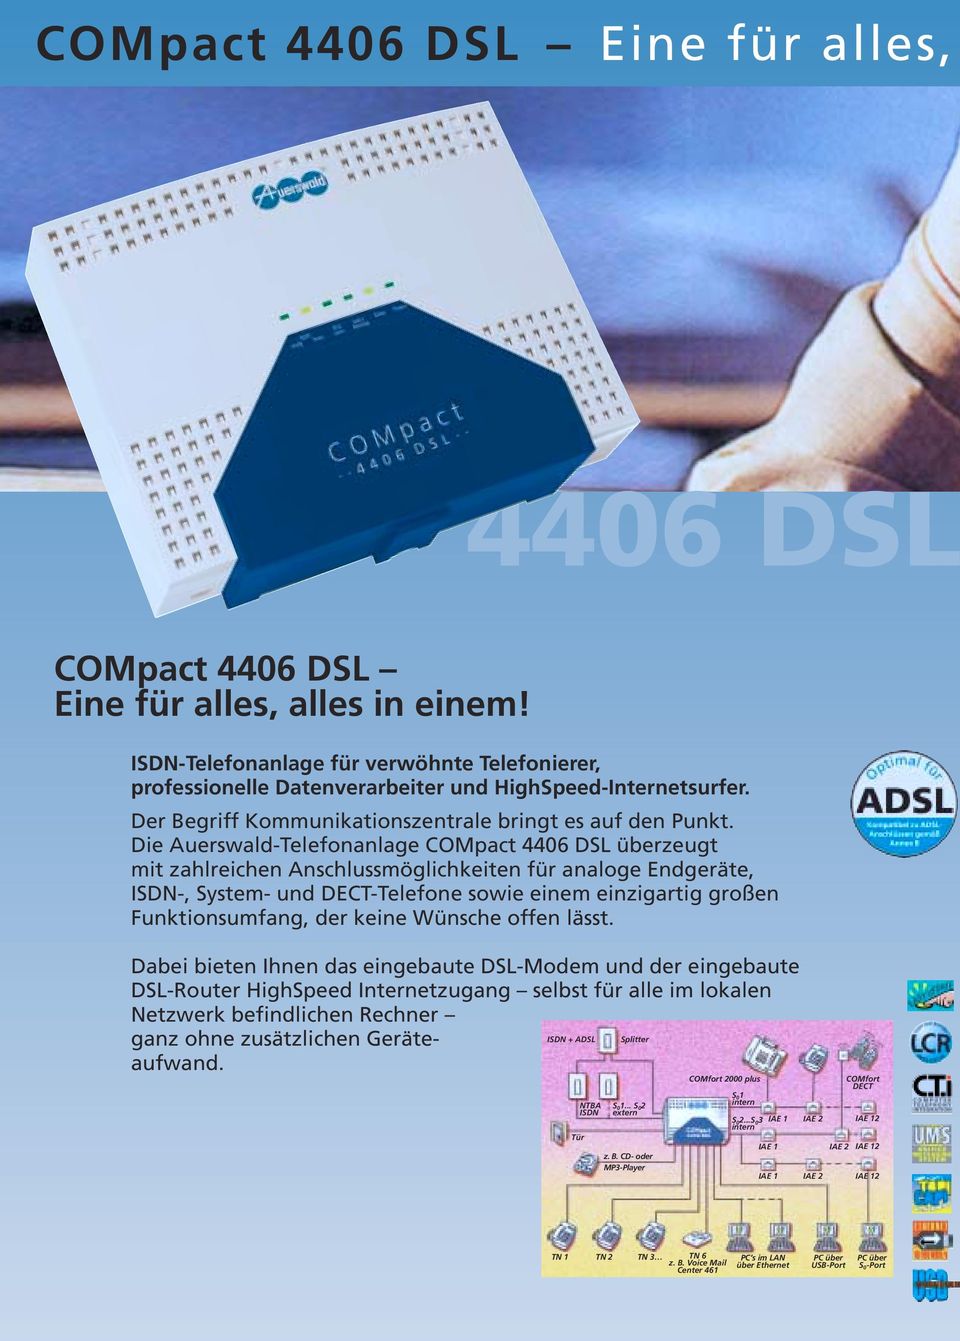 Die Auerswald-Telefonanlage COMpact 4406 DSL überzeugt mit zahlreichen Anschlussmöglichkeiten für analoge Endgeräte, ISDN-, System- und DECT-Telefone sowie einem einzigartig großen Funktionsumfang,